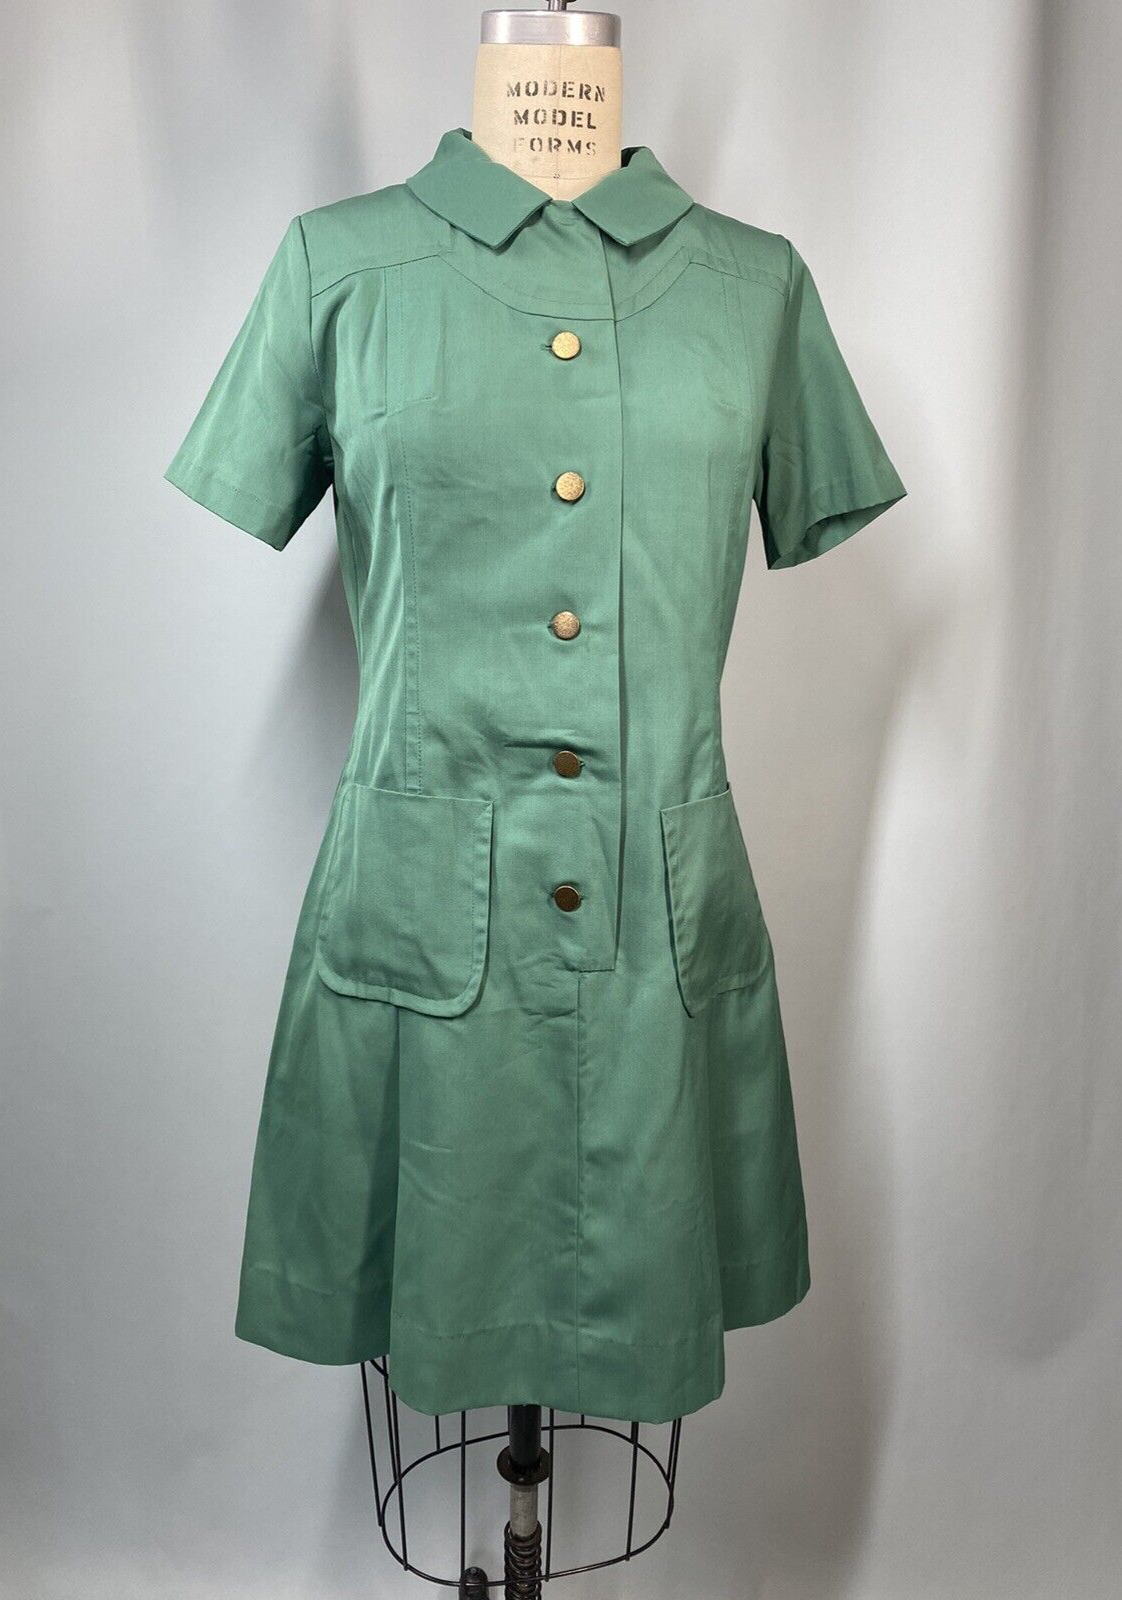 Vintage Girl Scouts Uniform Dress Cadet Green ADULT SIZE 10 MED LARGE 1960s MOD